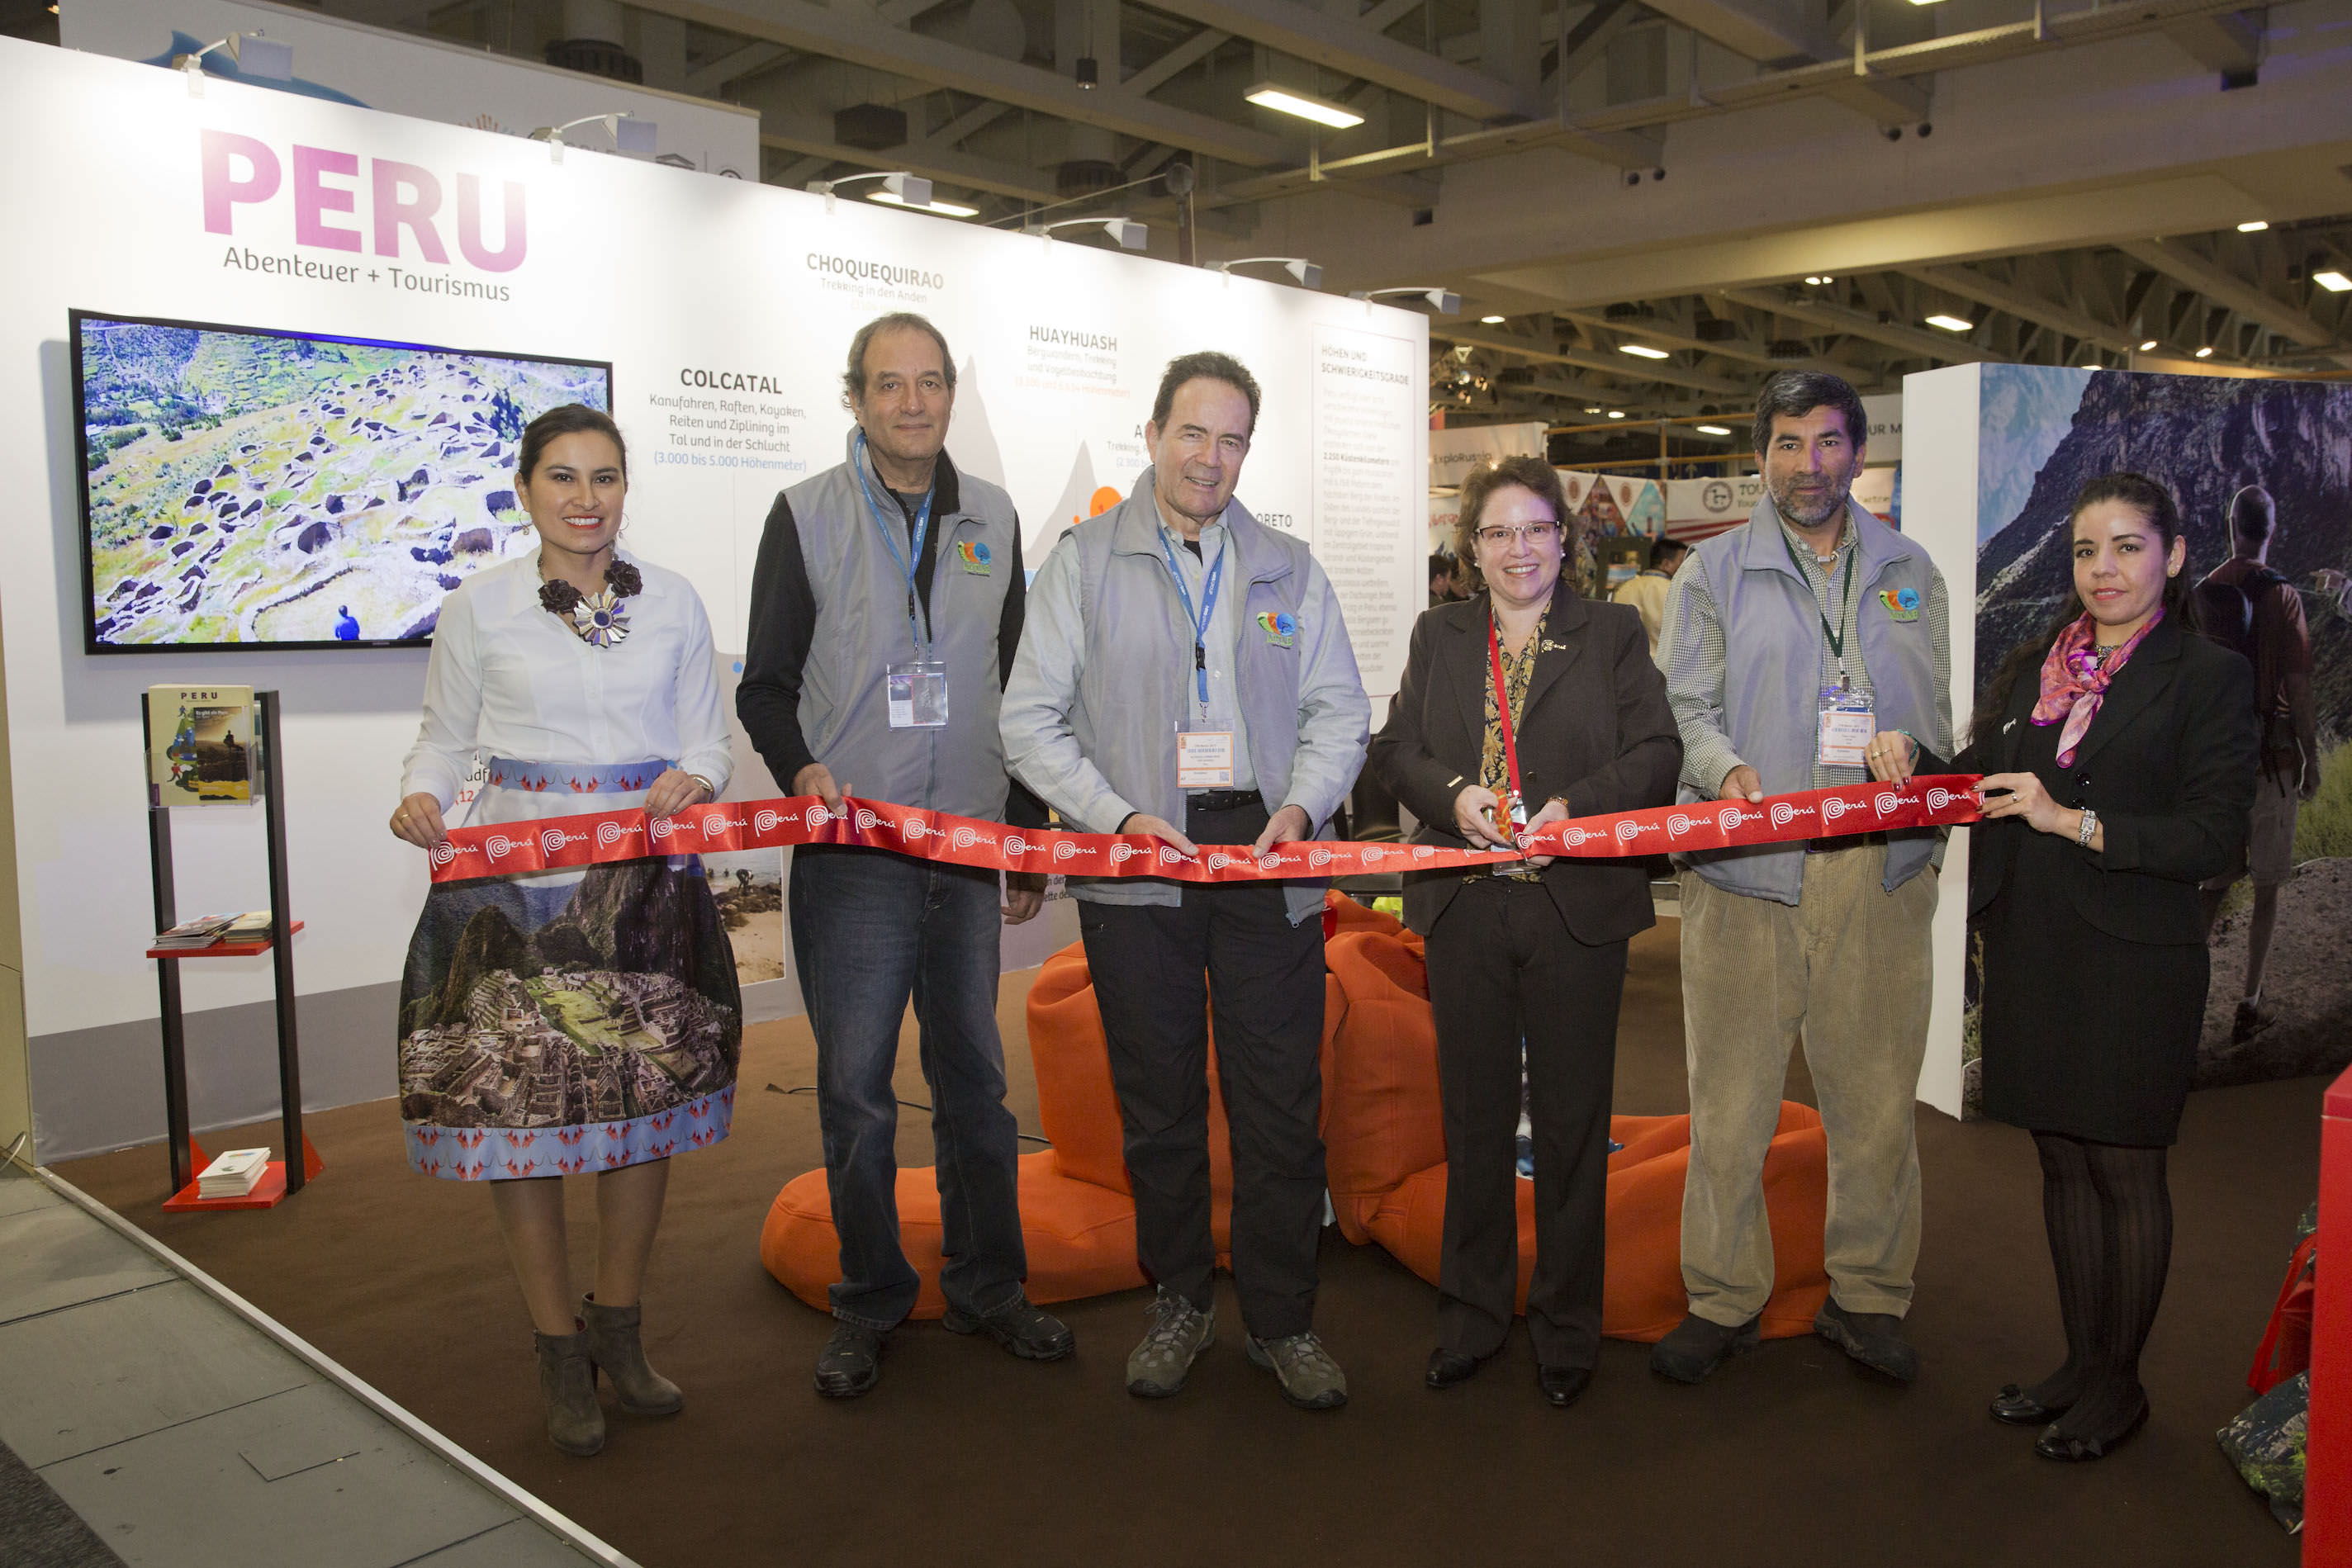 ITB4 - Peruvian presence impacted at the ITB Berlin fair